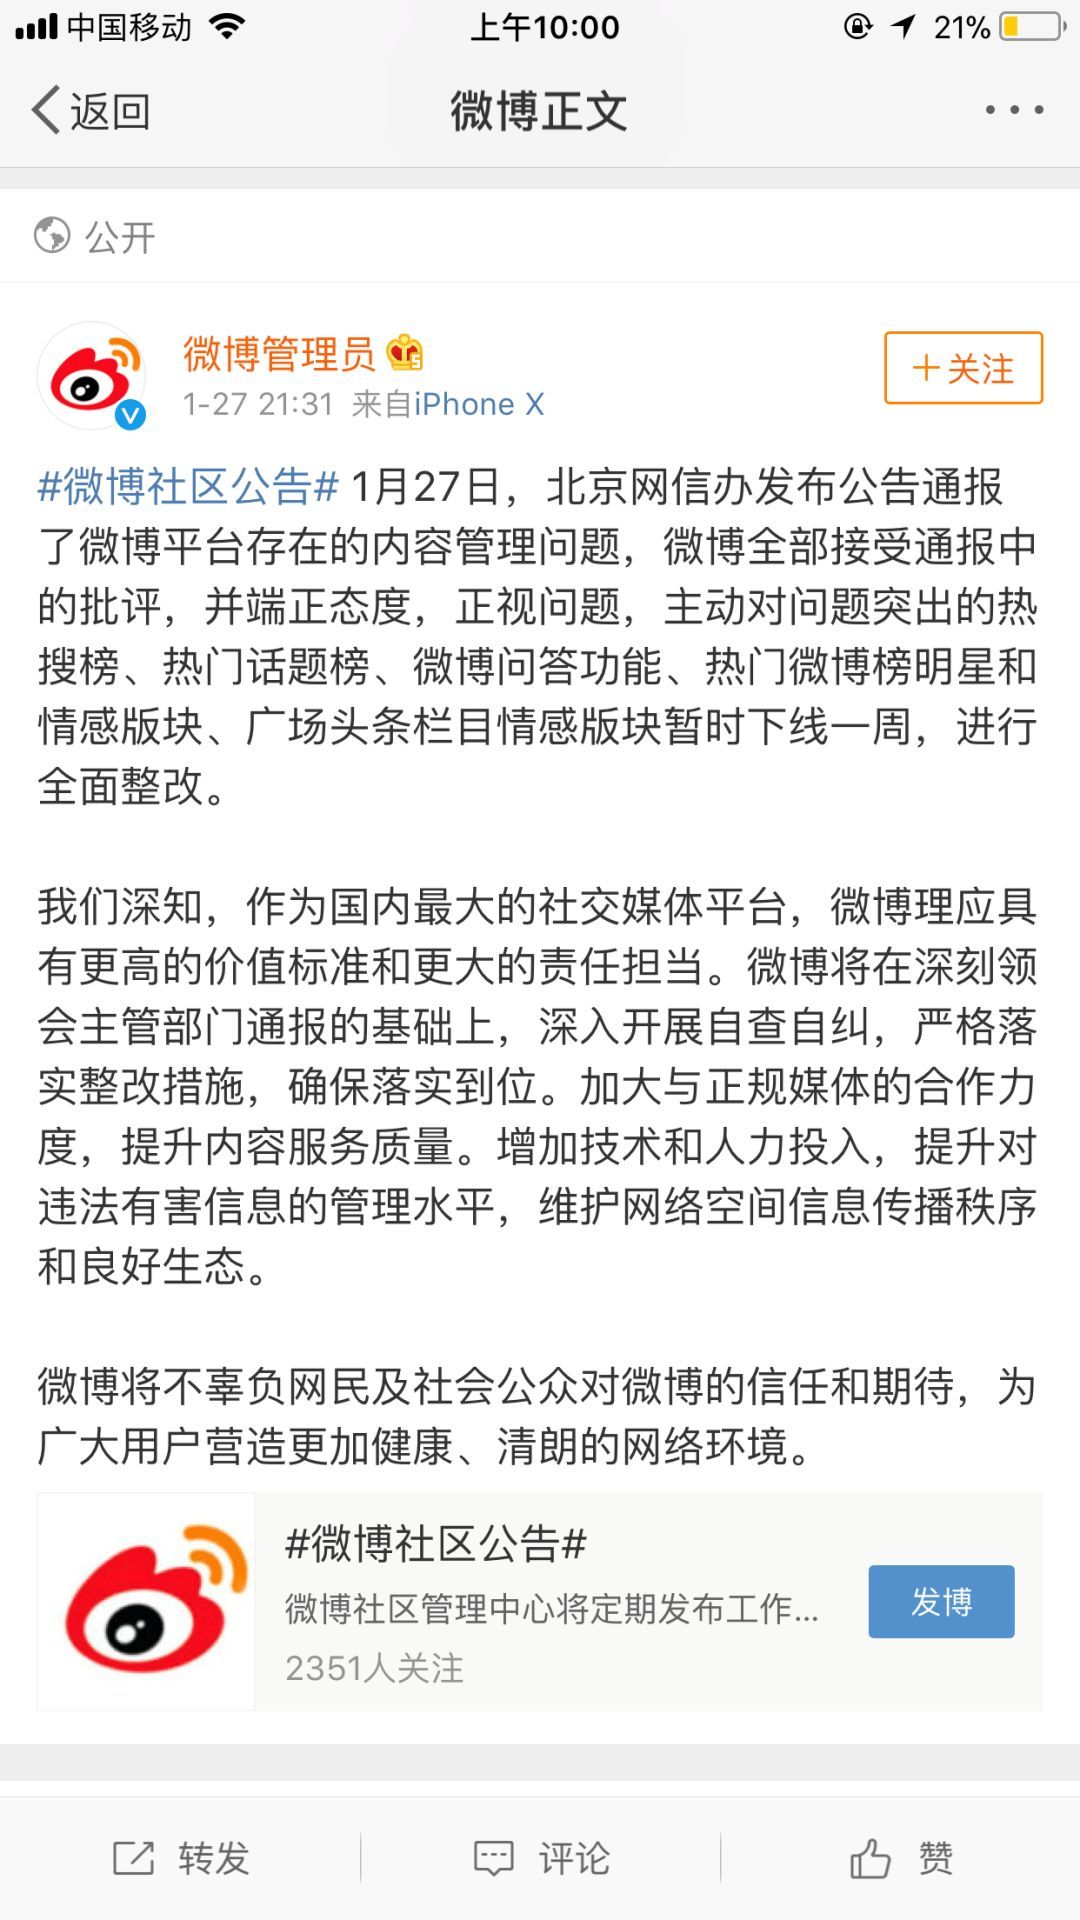 「热搜榜被勒令下线整改·谈资」1月29日